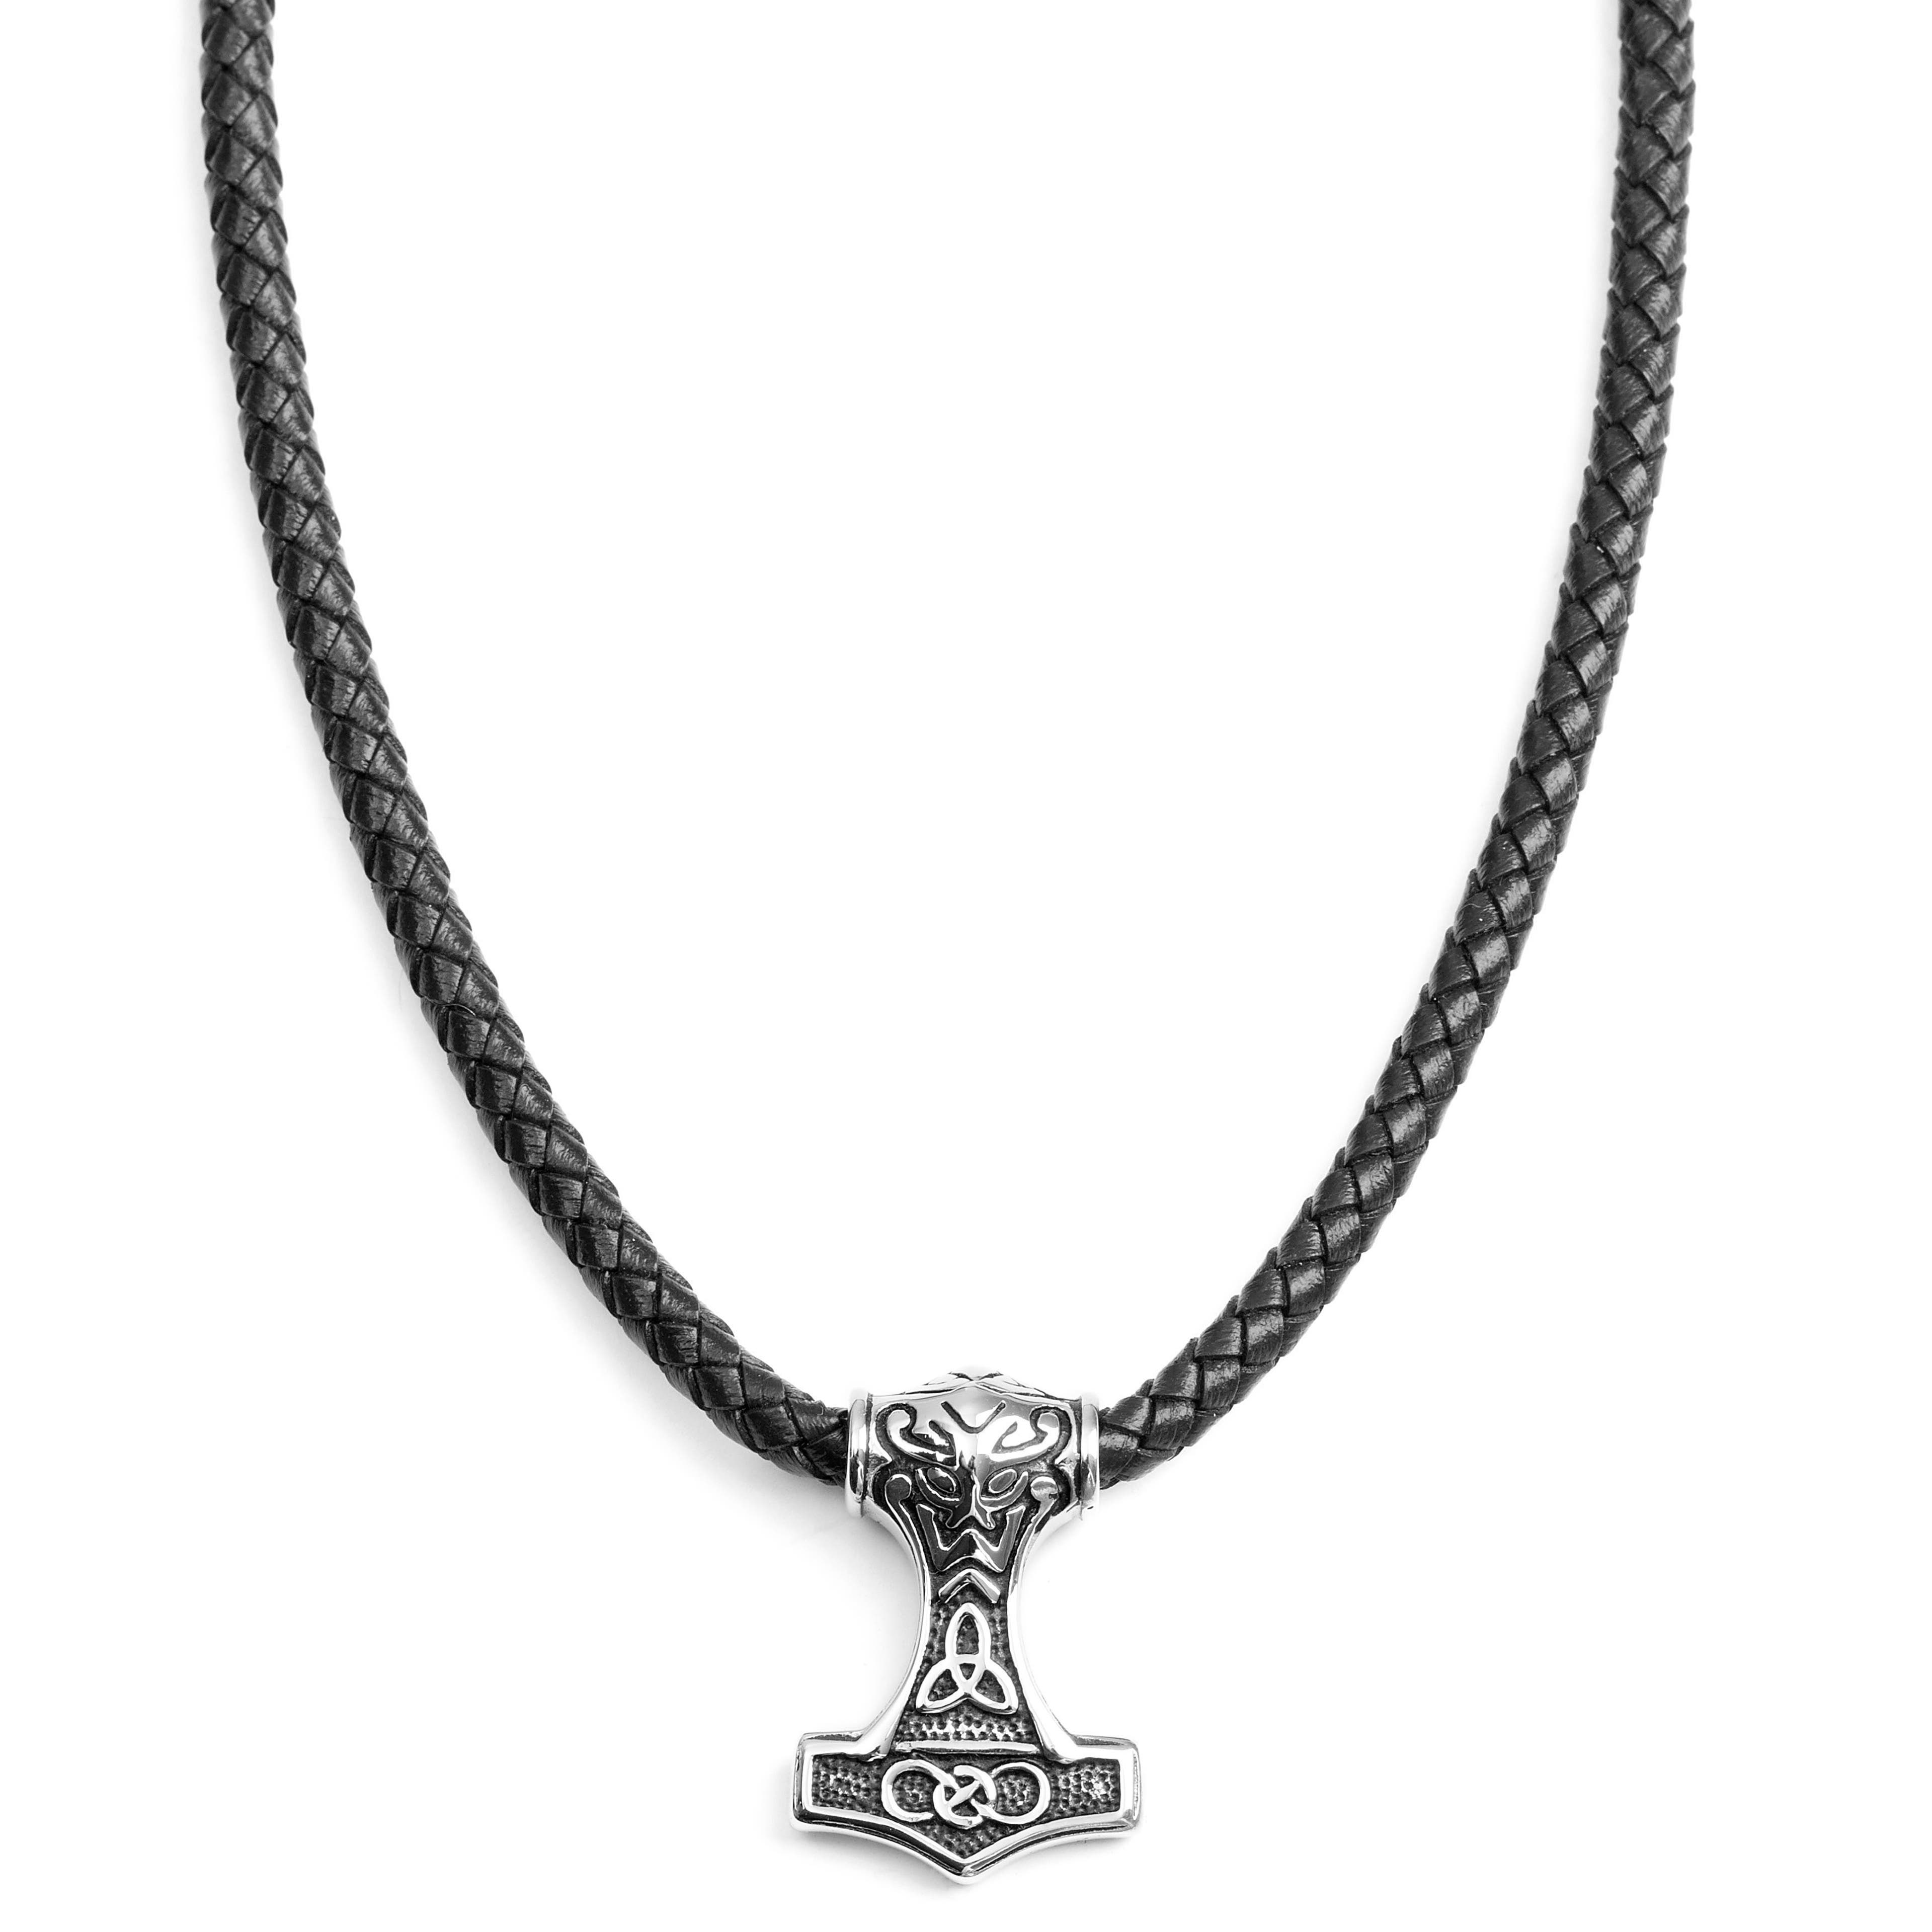 Obojstranný čierny kožený náhrdelník s keltským motívom